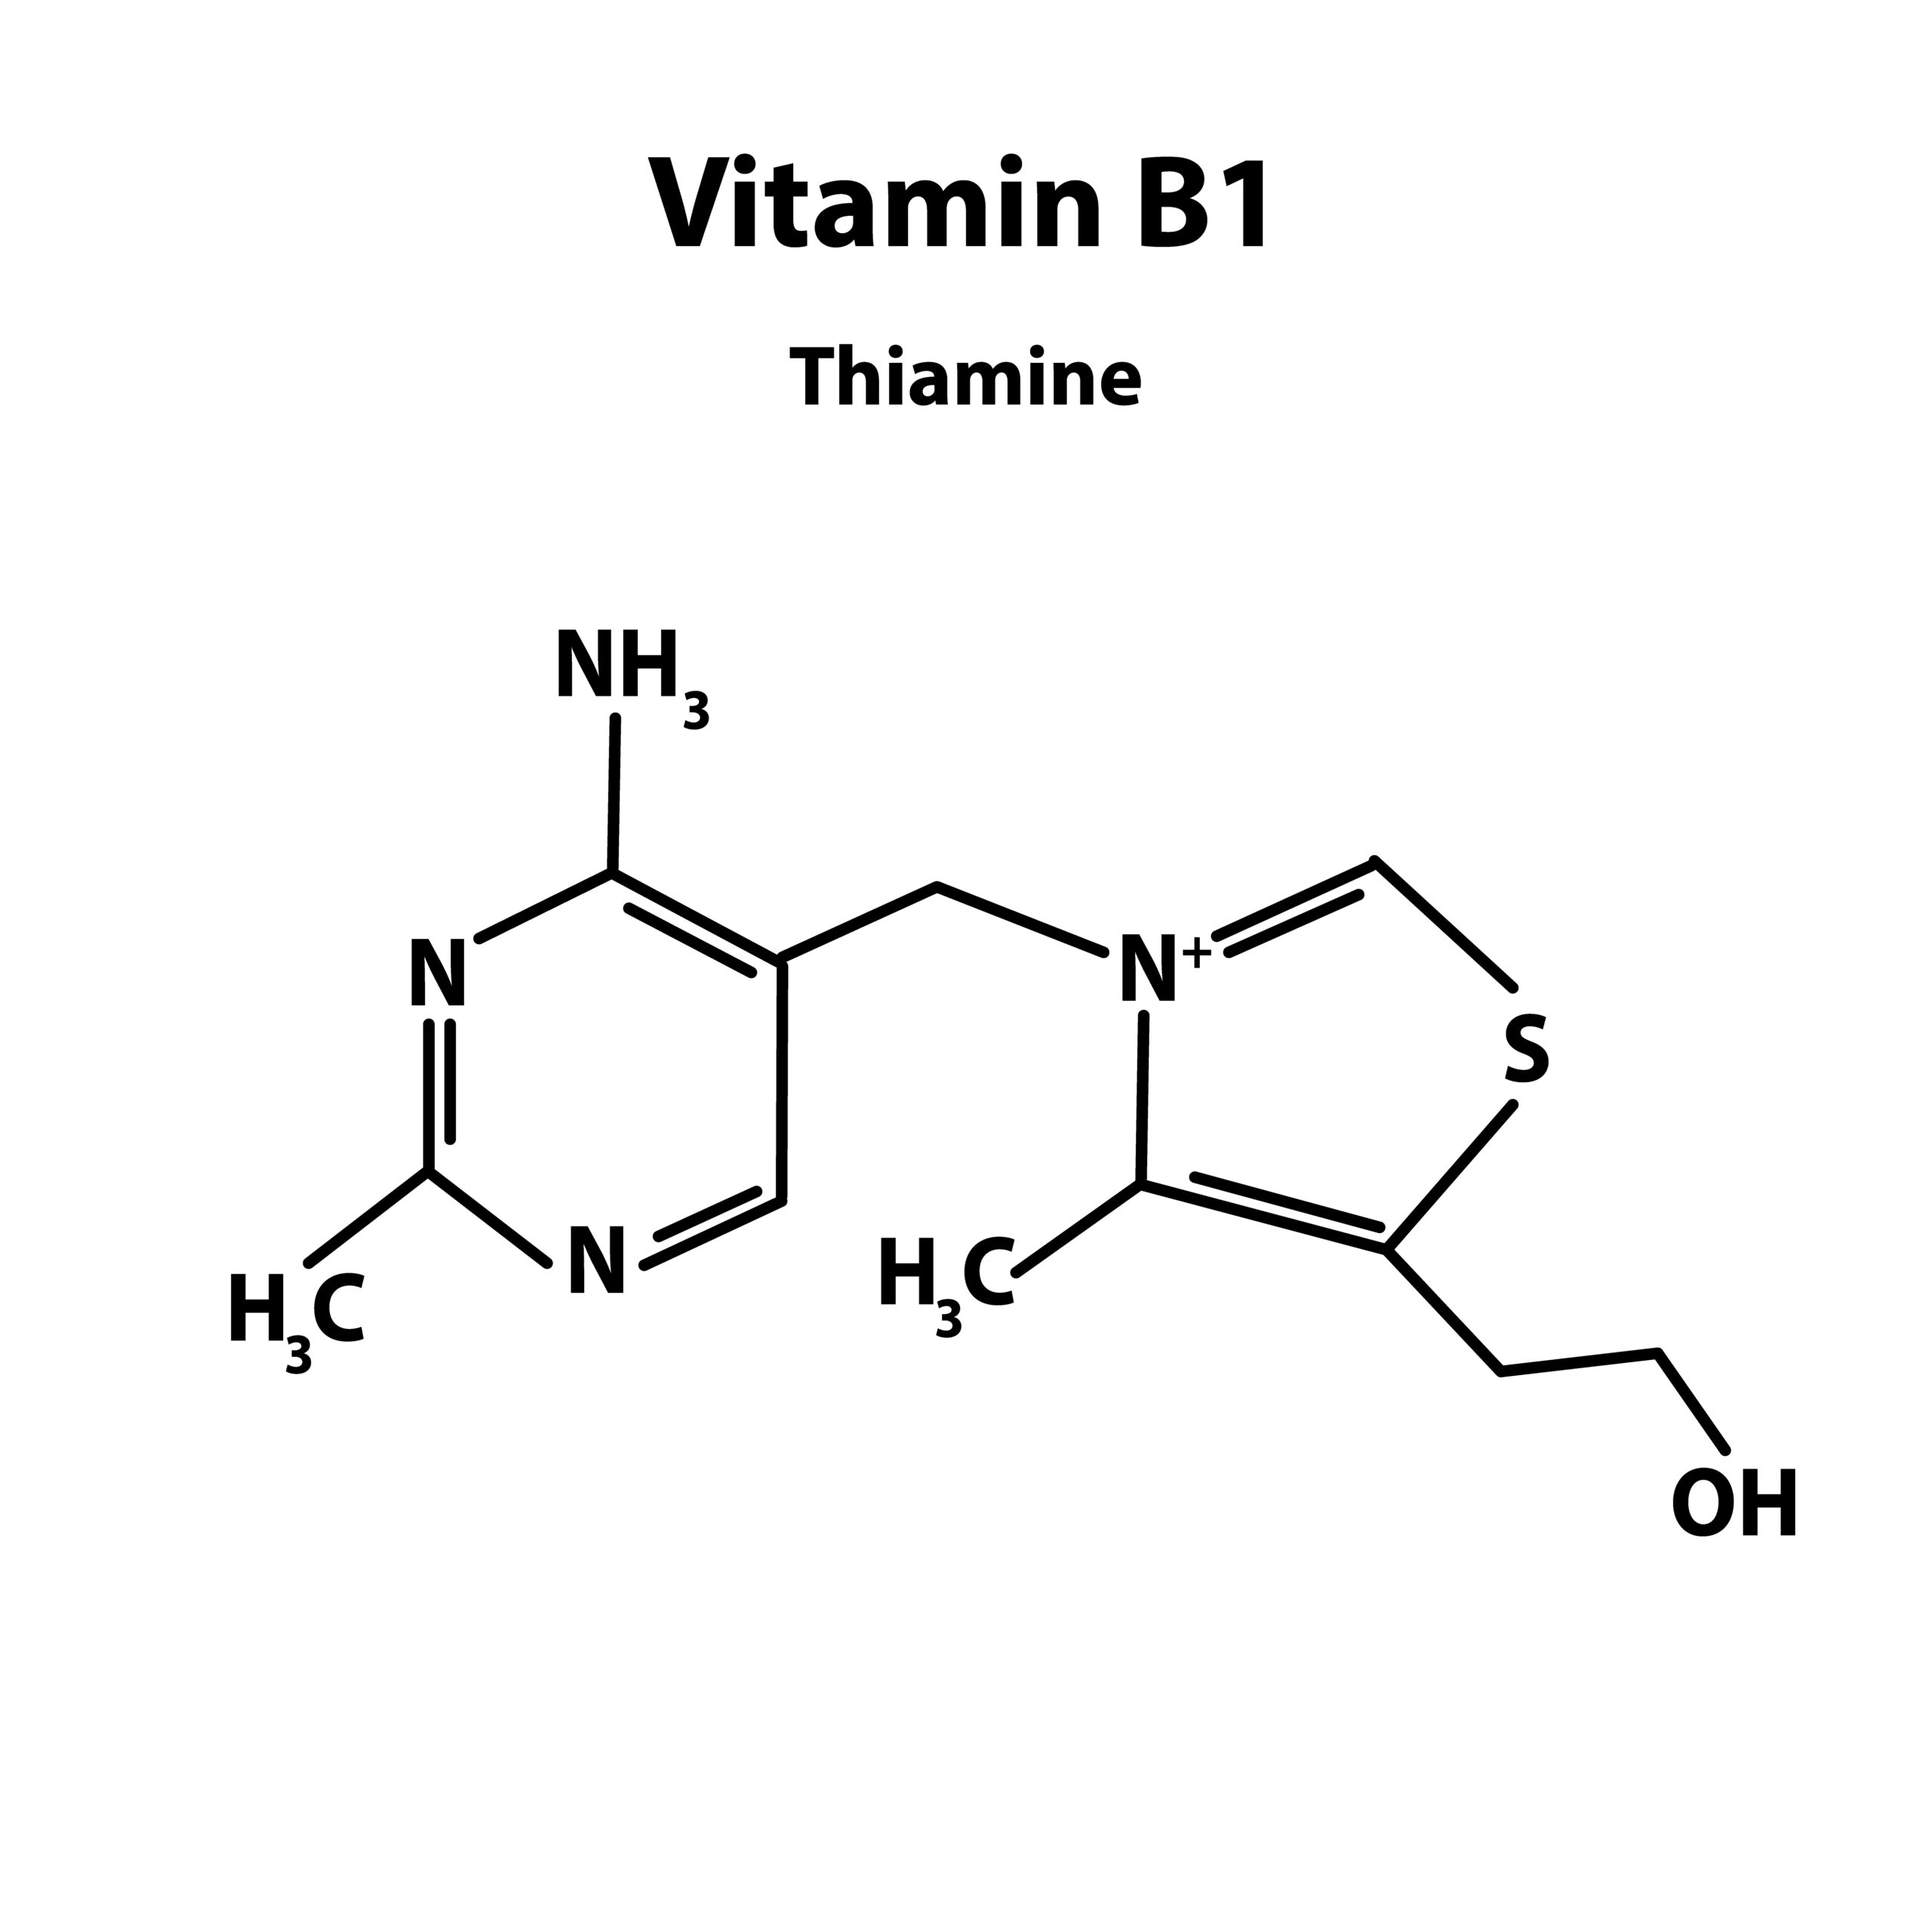 B1-vitamin